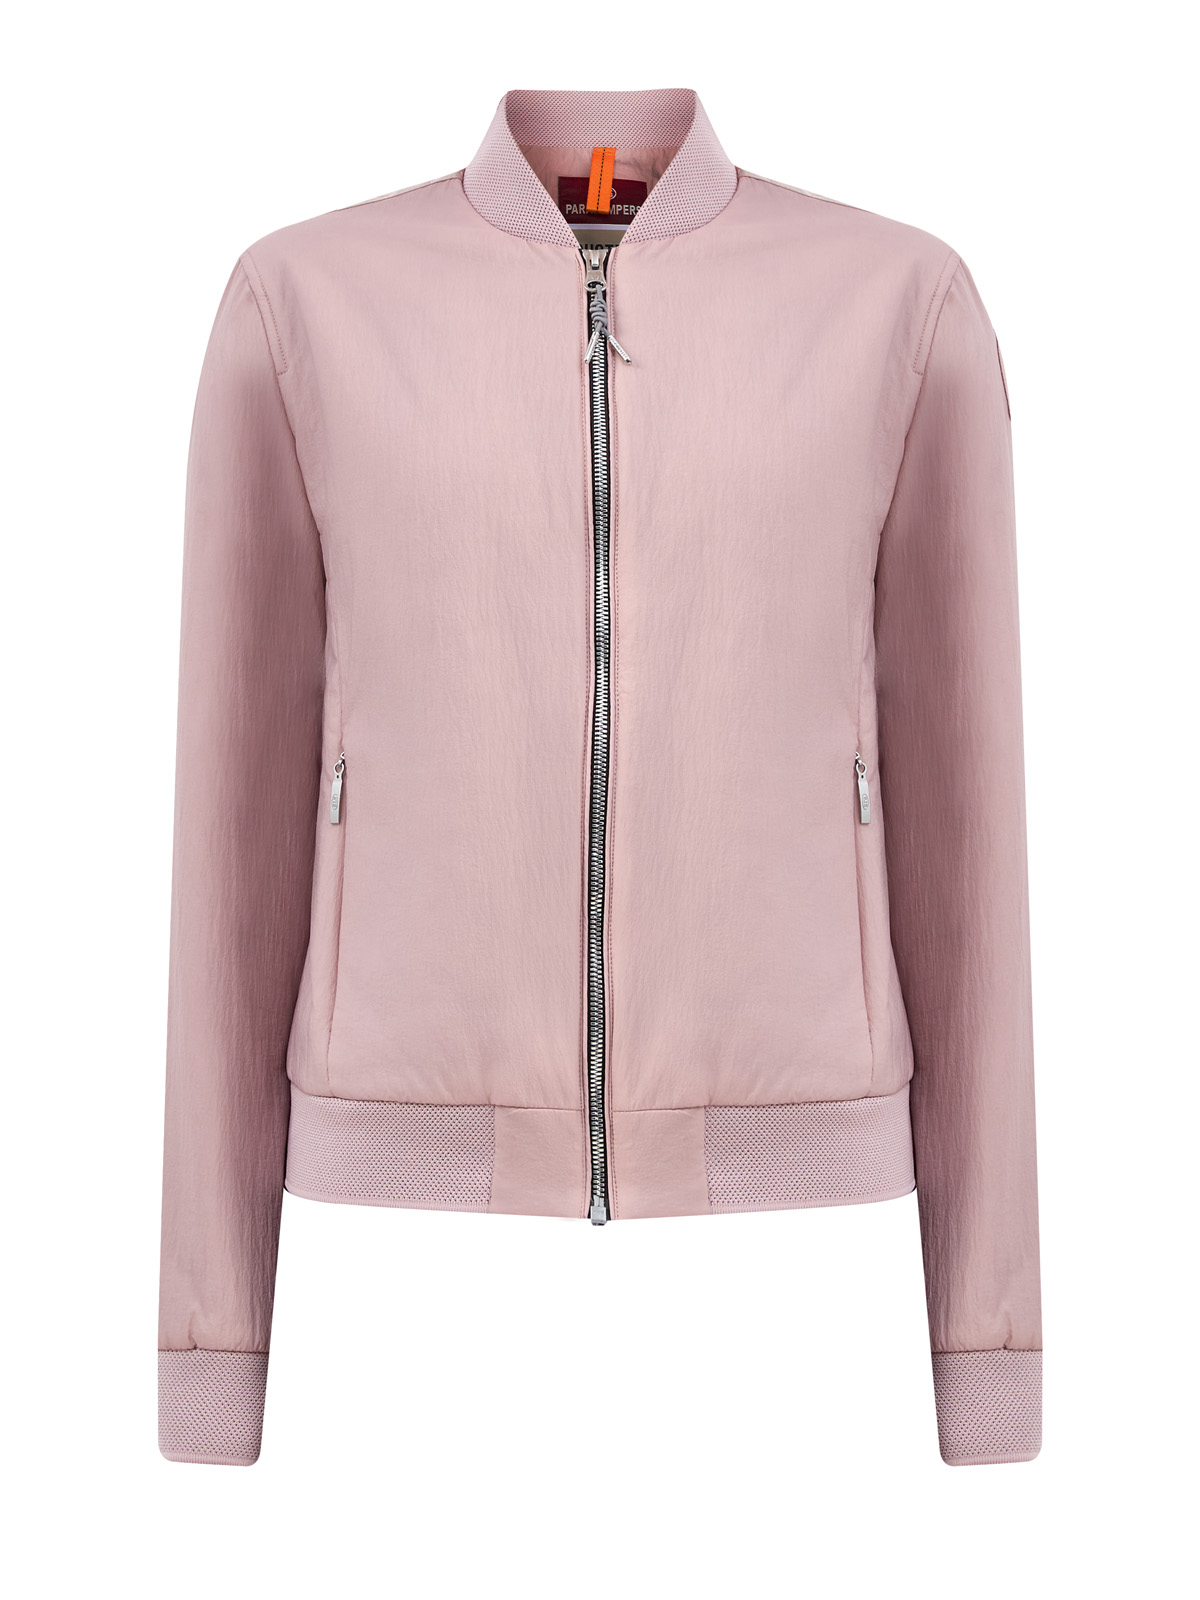 Легкая куртка-бомбер Lux из матовой нейлоновой тафты PARAJUMPERS, цвет розовый, размер S;M;L;XL